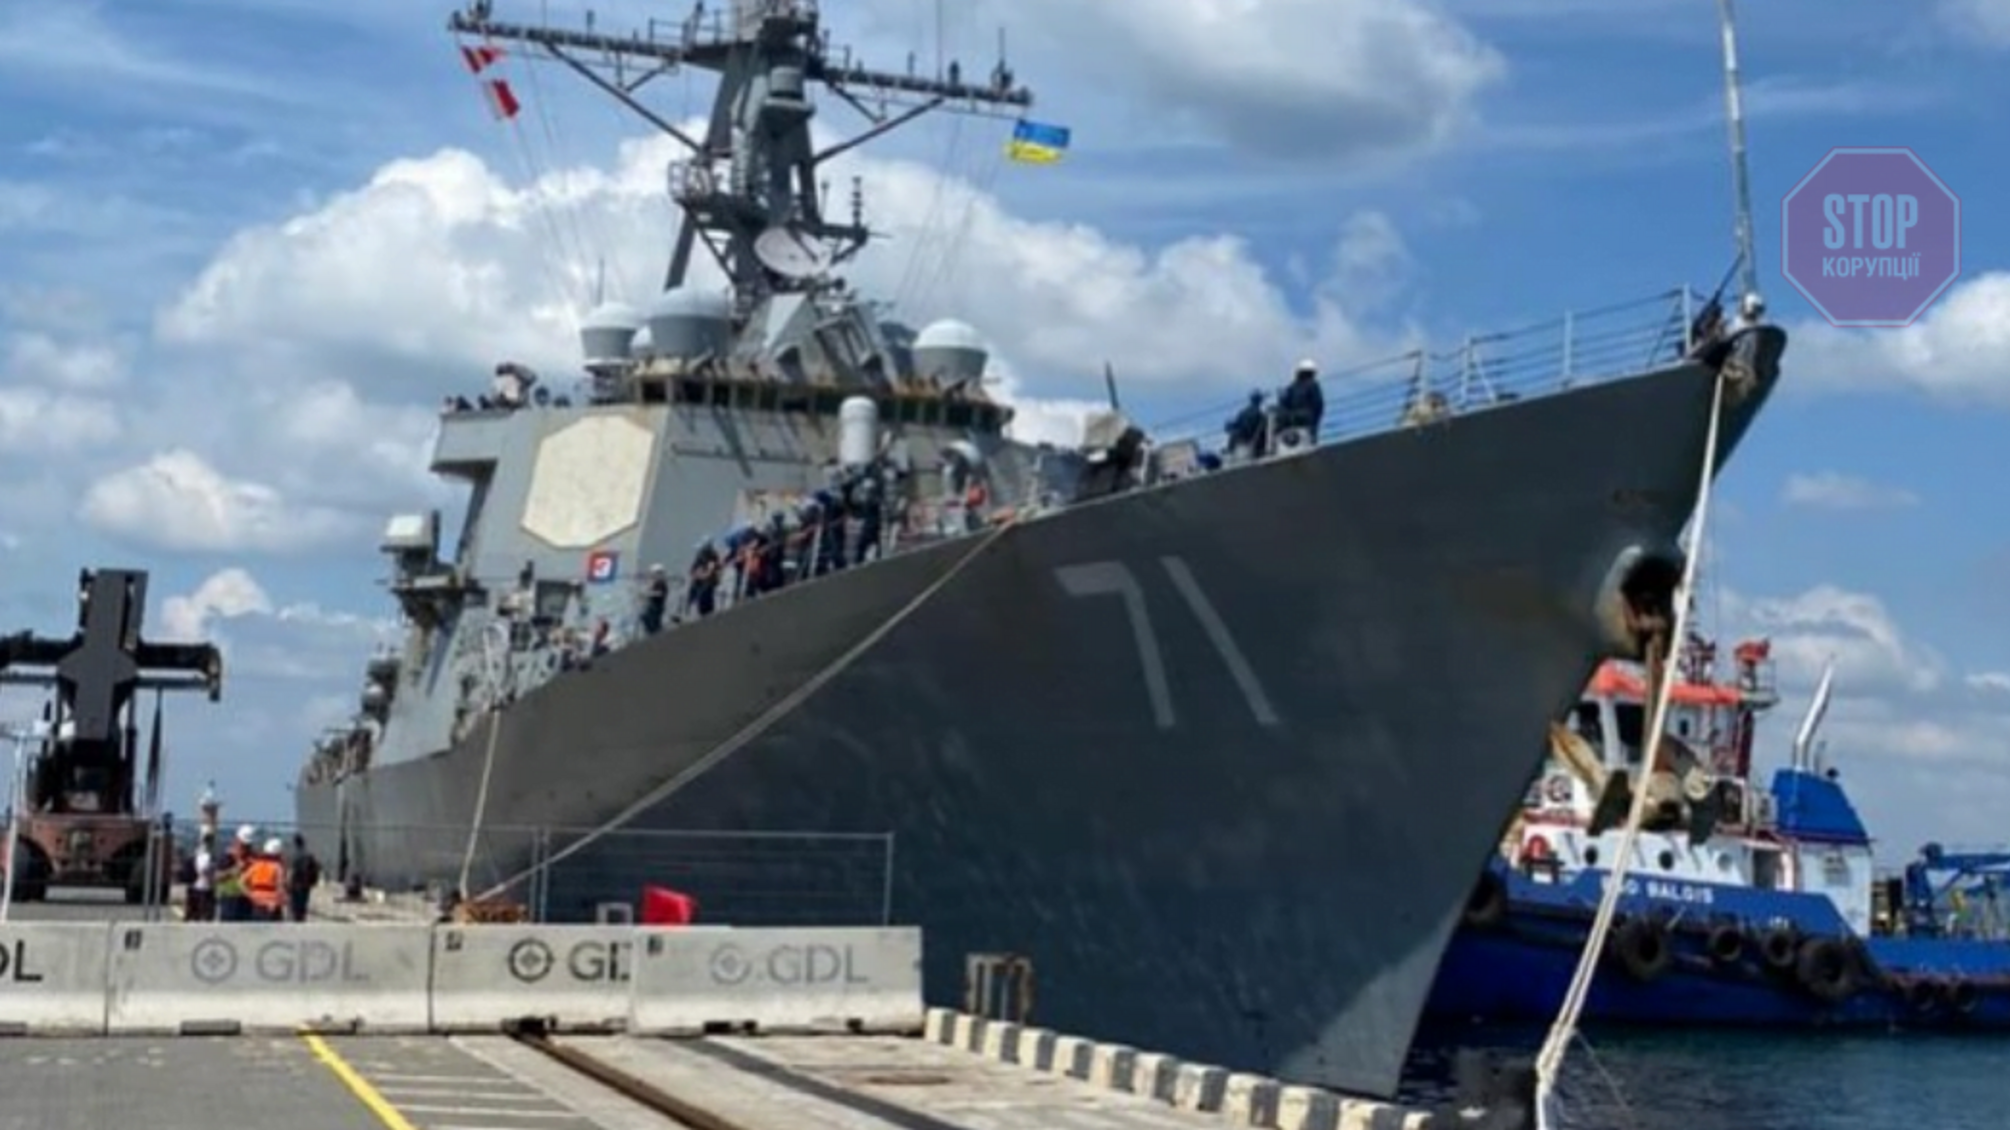 В порт Одессы зашел американский эсминец